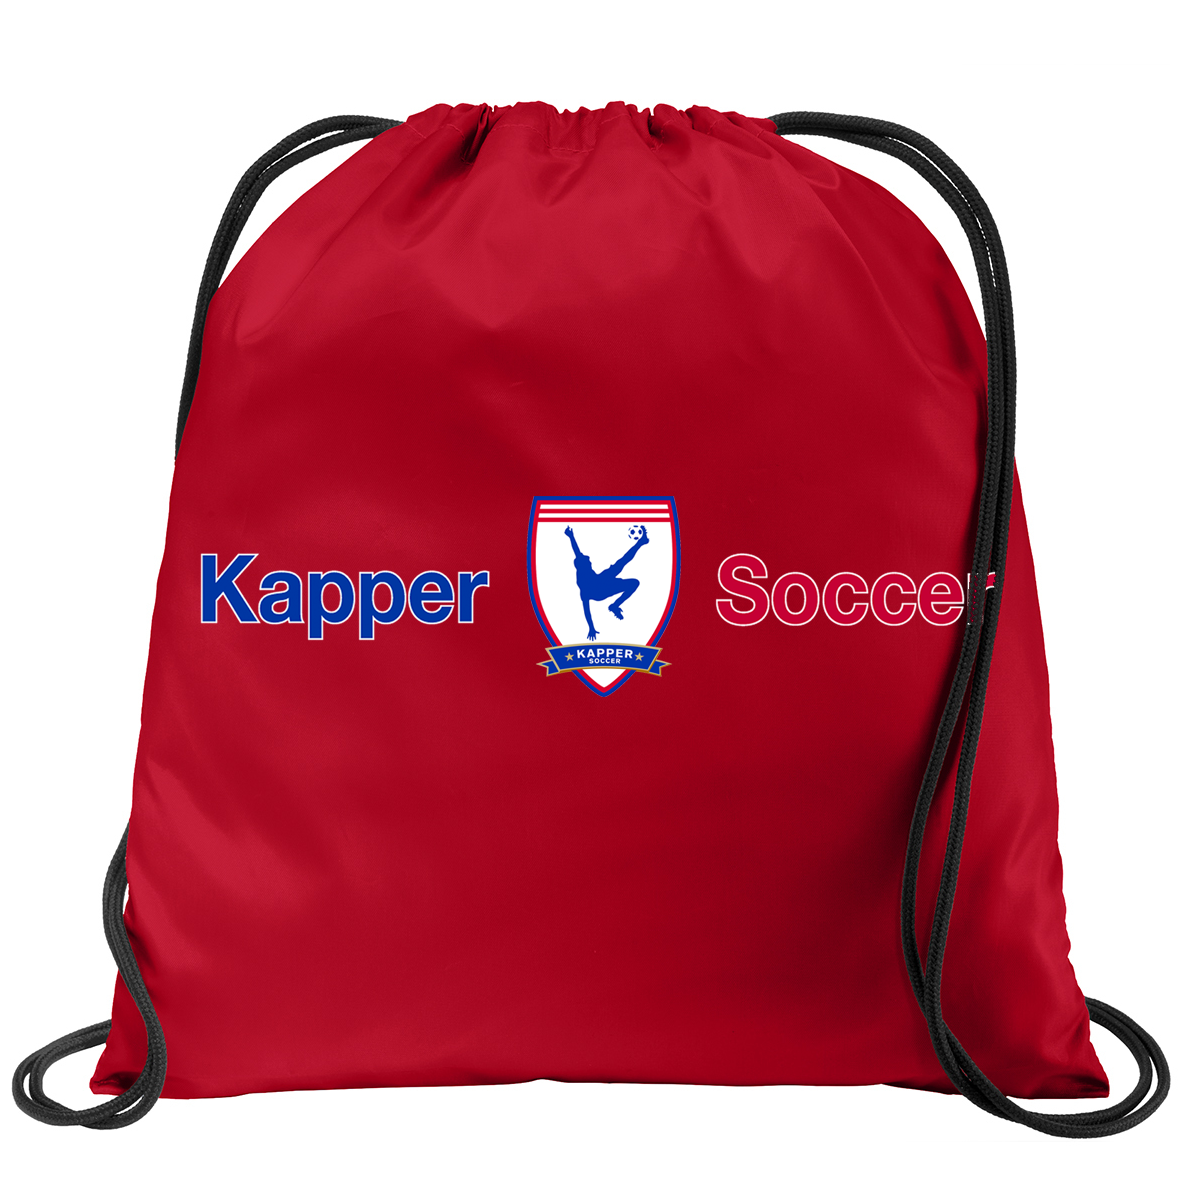 Kapper Soccer Cinch Pack